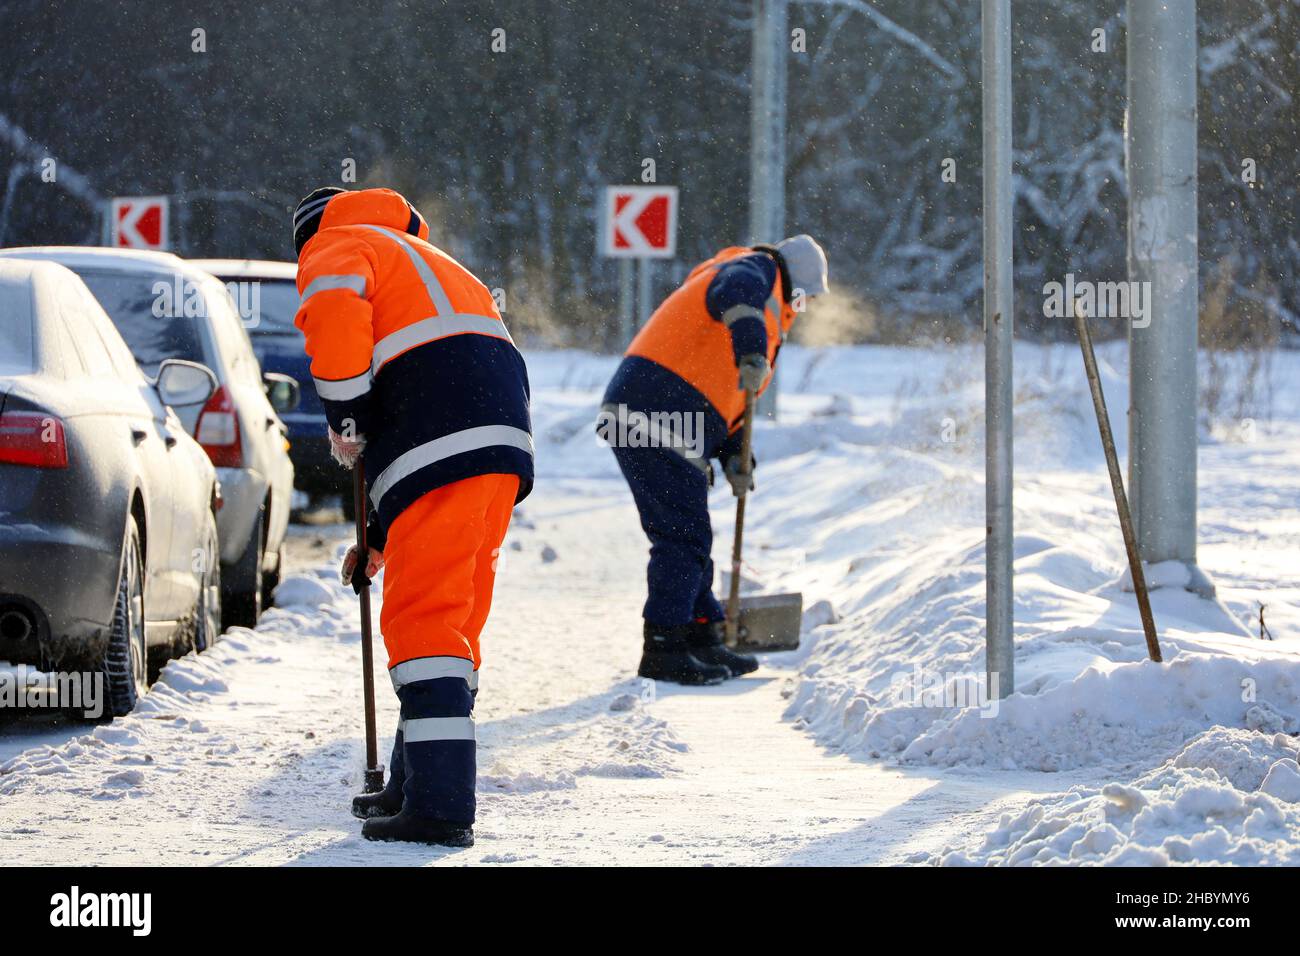 Déneigement en hiver par temps de gel.Deux hommes travaillent en uniforme avec une pelle et un pied de biche nettoyant la rue près du parking Banque D'Images